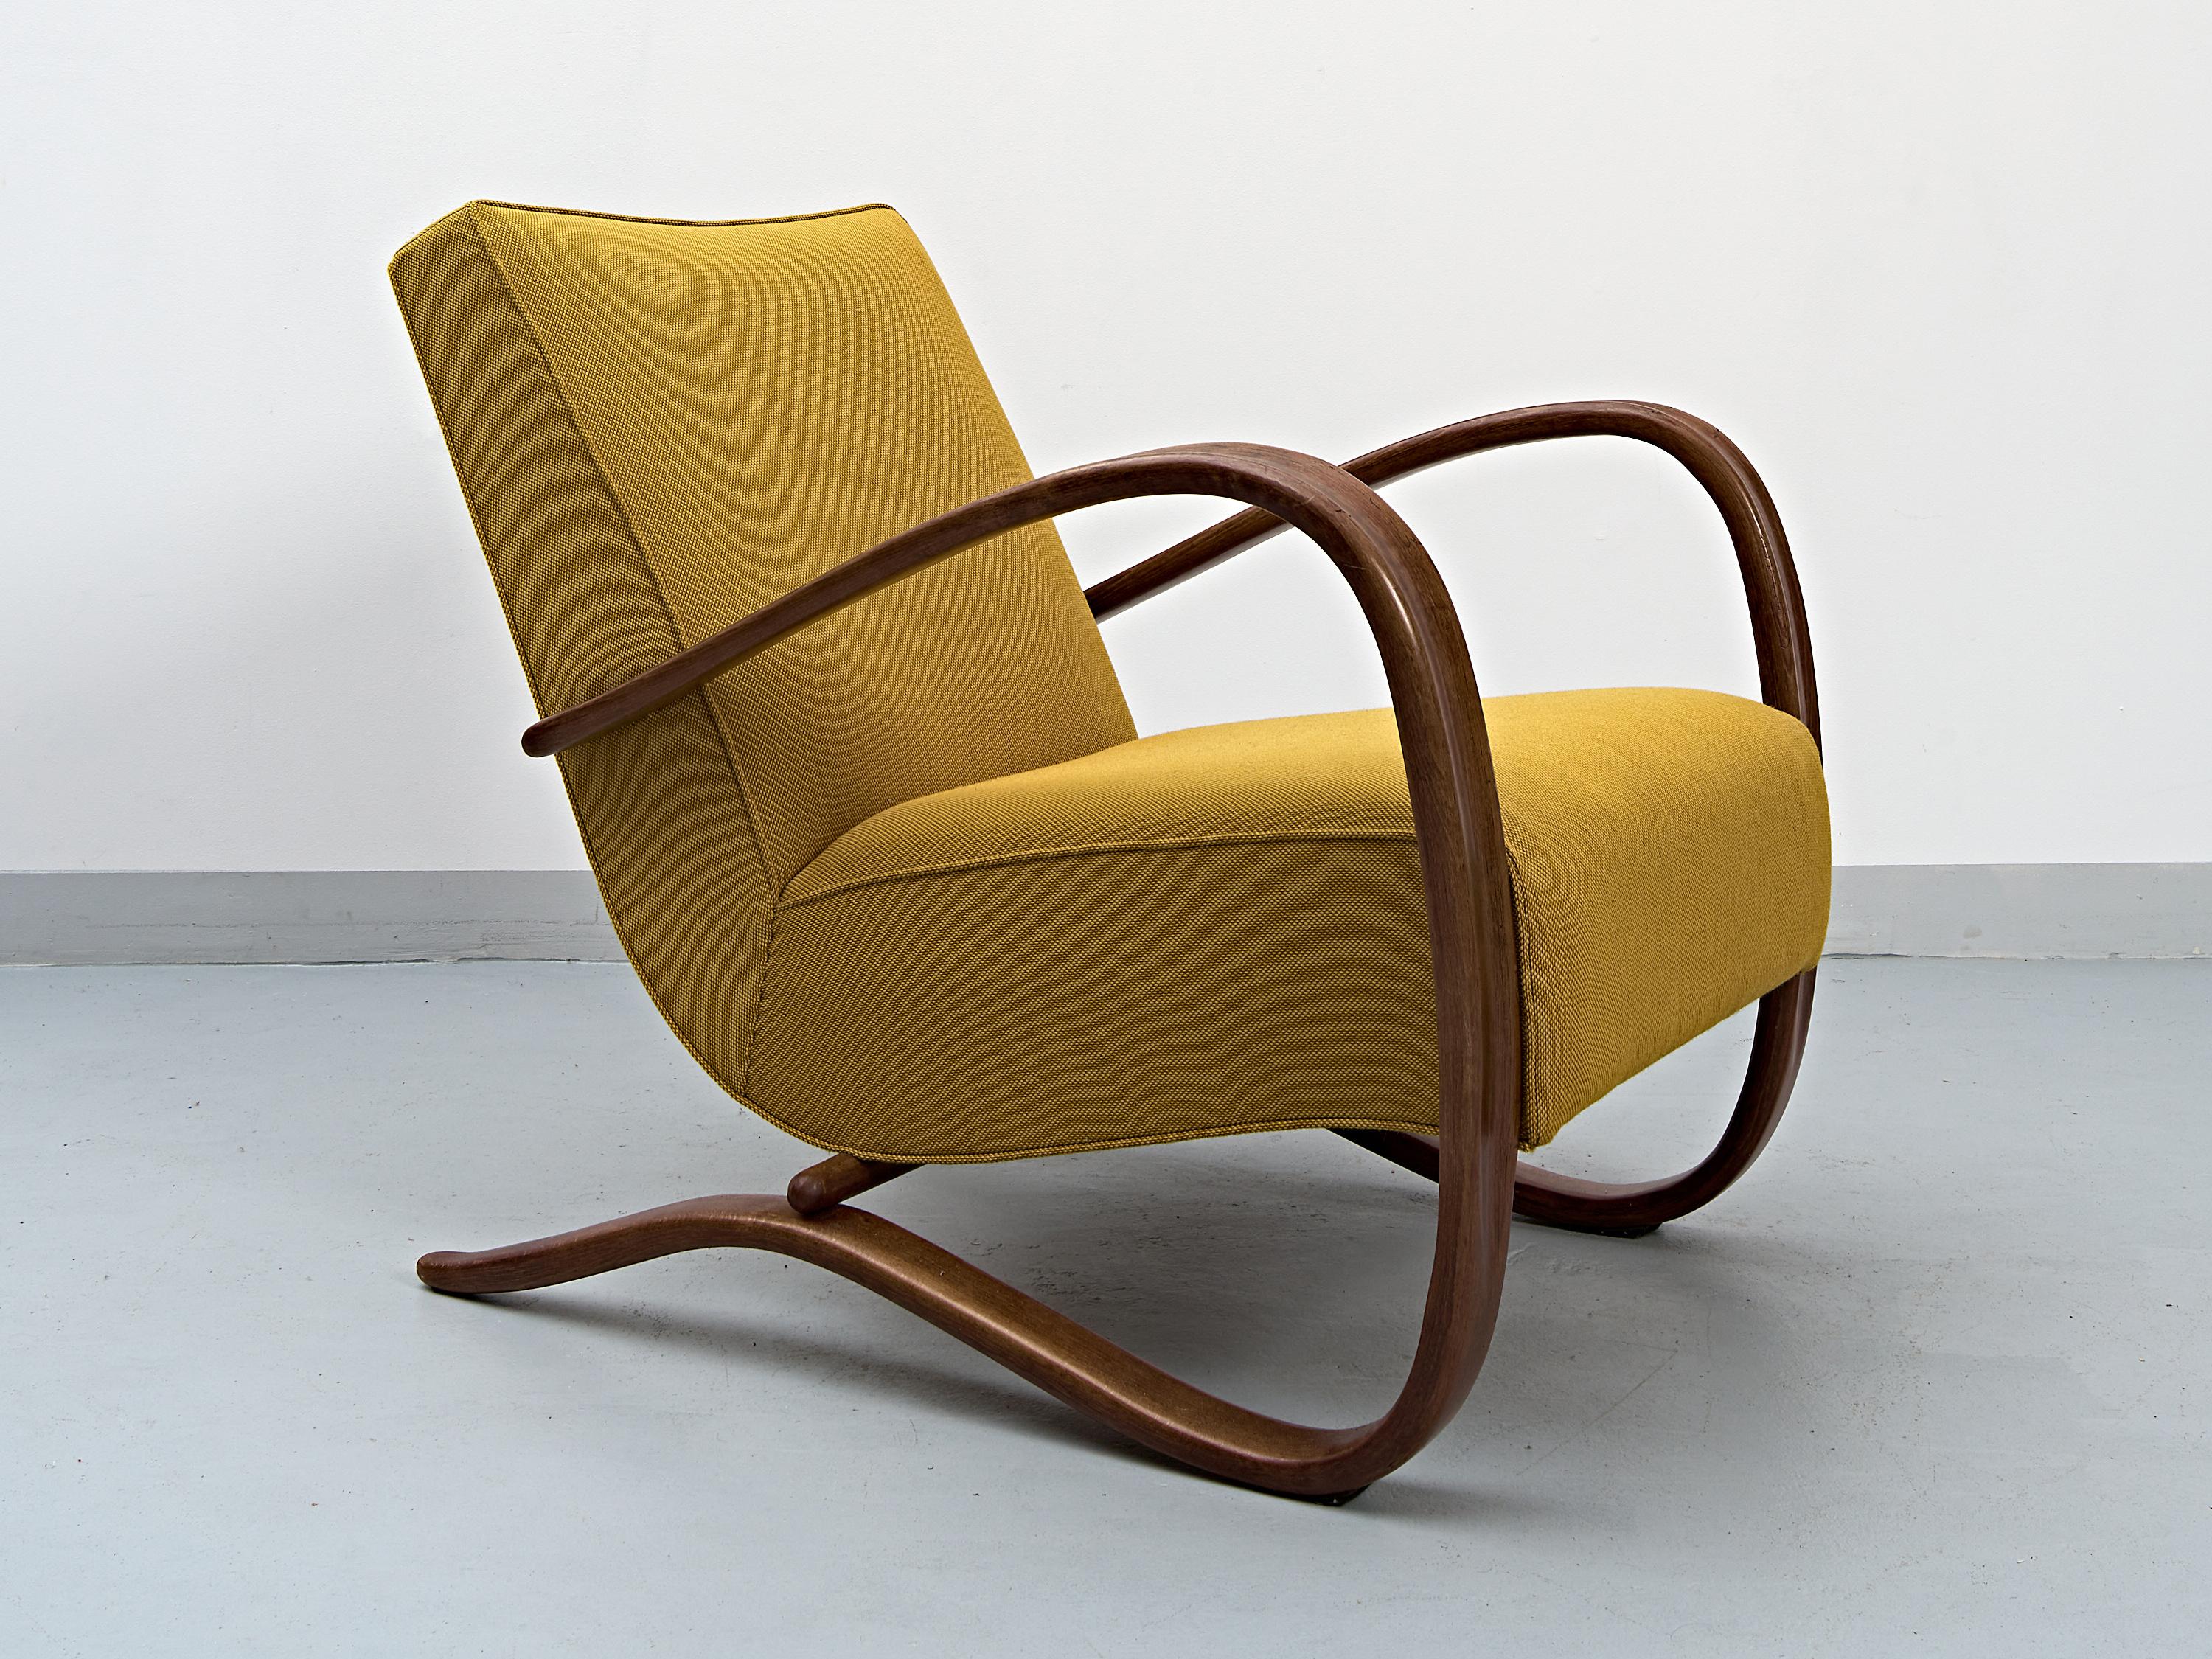 Der legendäre Stuhl Halabala H-269, entworfen von Jindřich Halabala, um 1930. Eines der bekanntesten tschechoslowakischen Designs der Welt.
Gebogener Buchenholzrahmen mit halbmatter Lackierung. Die Sitze wurden neu gestaltet und mit hochwertigem